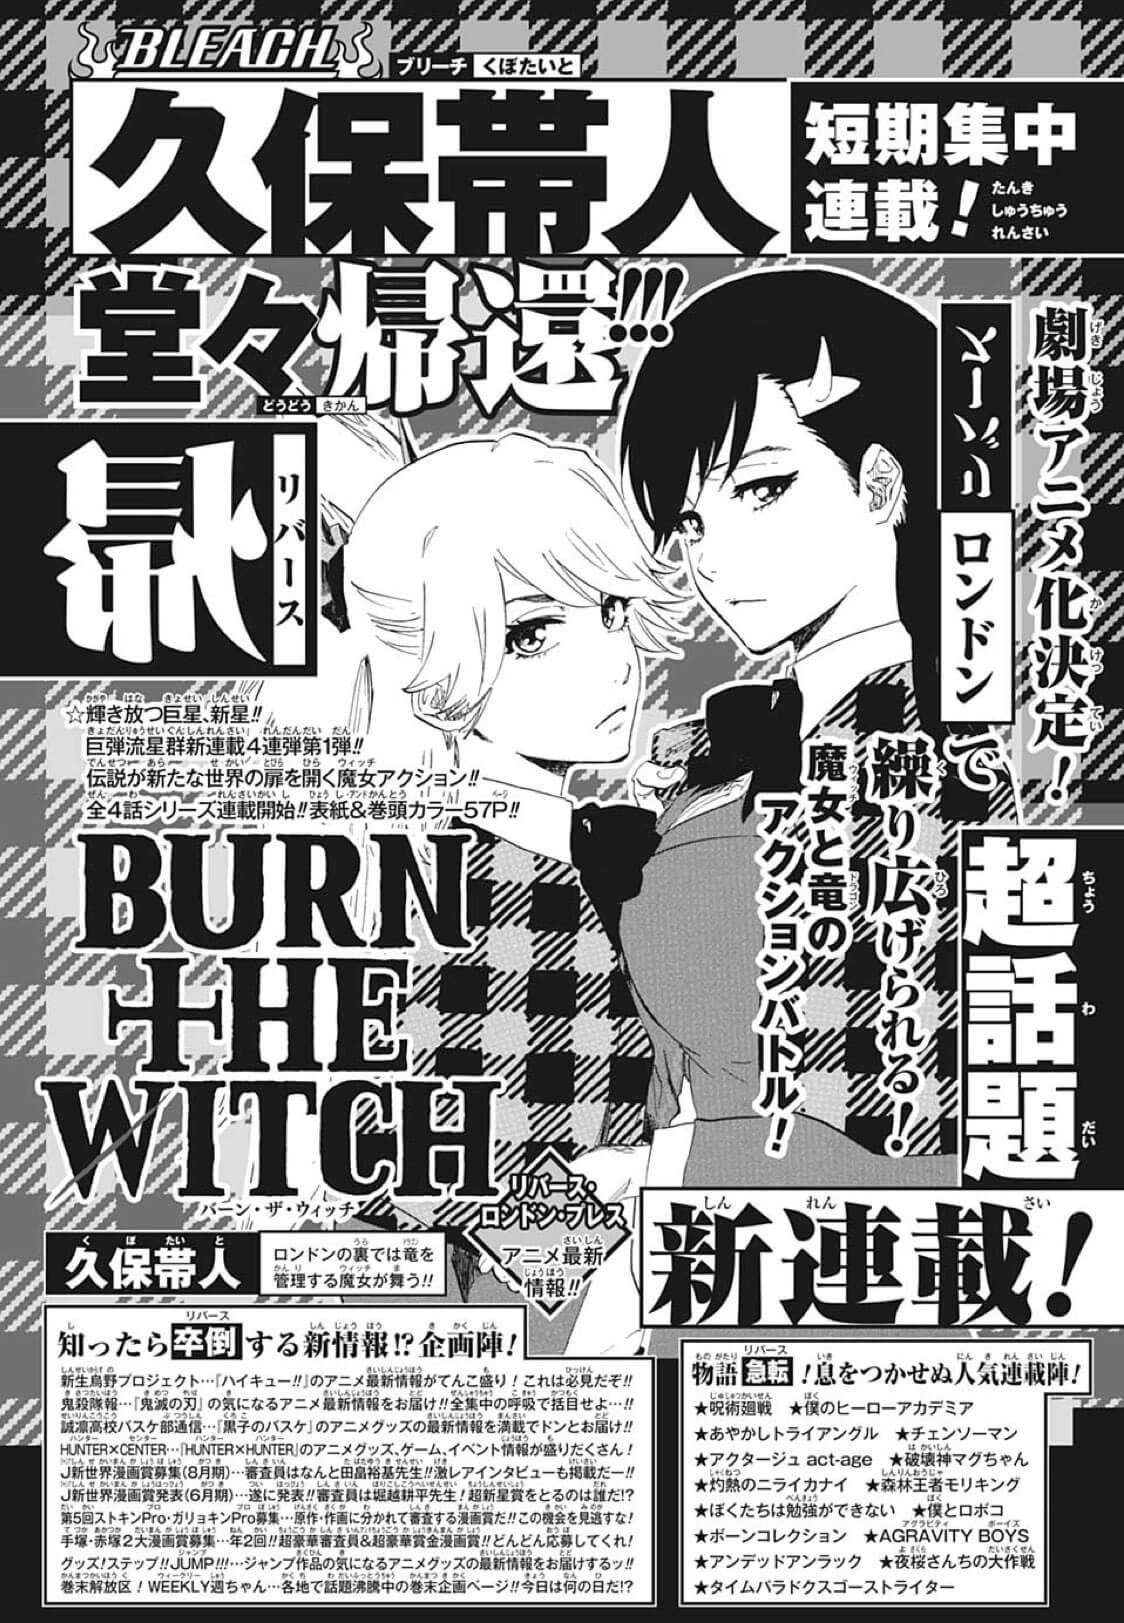 最新情報 Burn The Witch バーンザウィッチ 週刊少年ジャンプでの短期集中連載日程決定